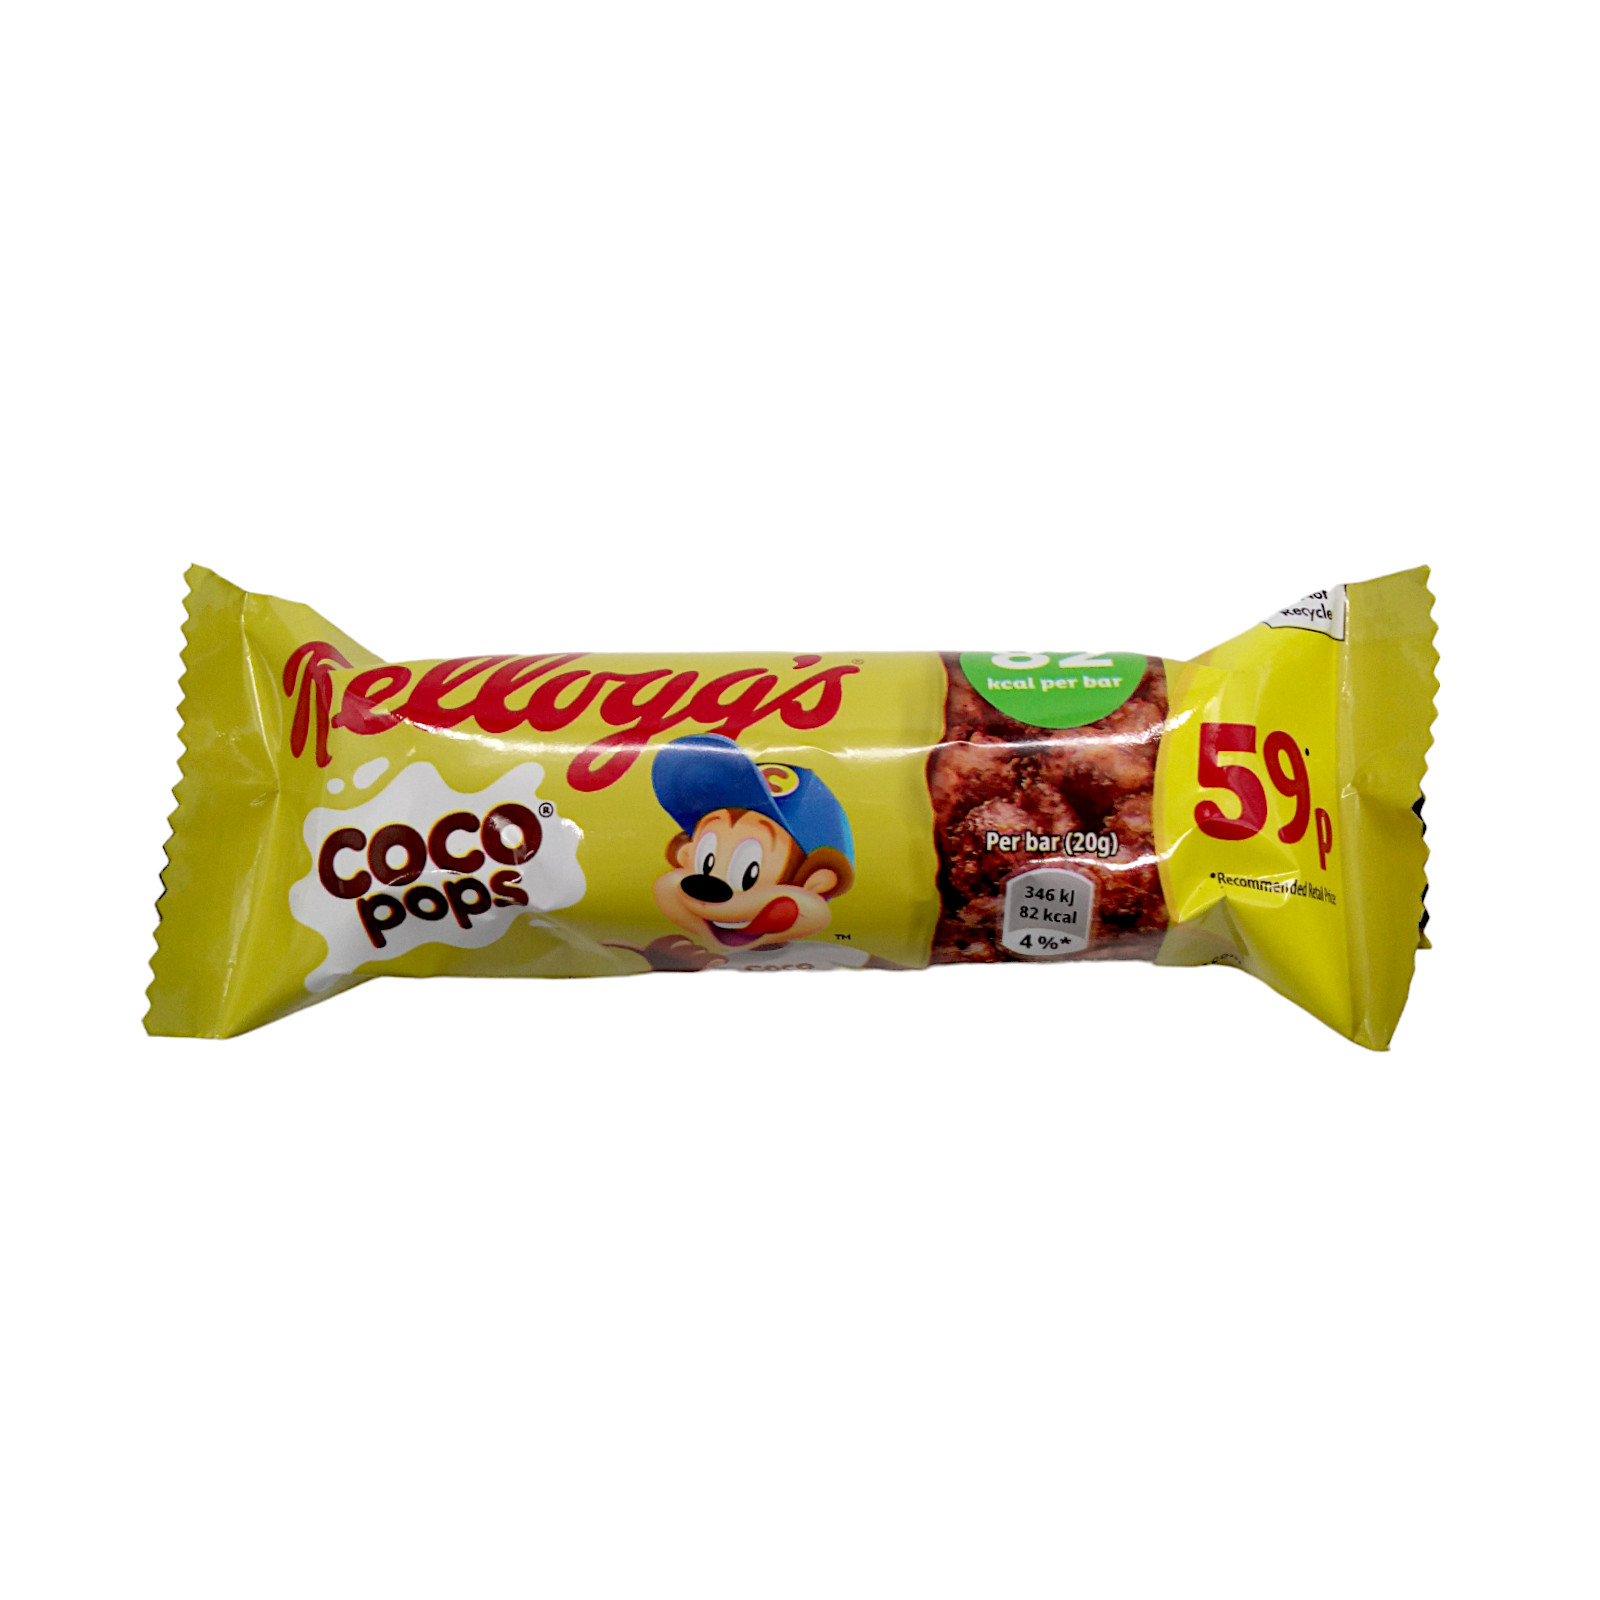 Kelloggs Coco Pop Cereal Bar 20g